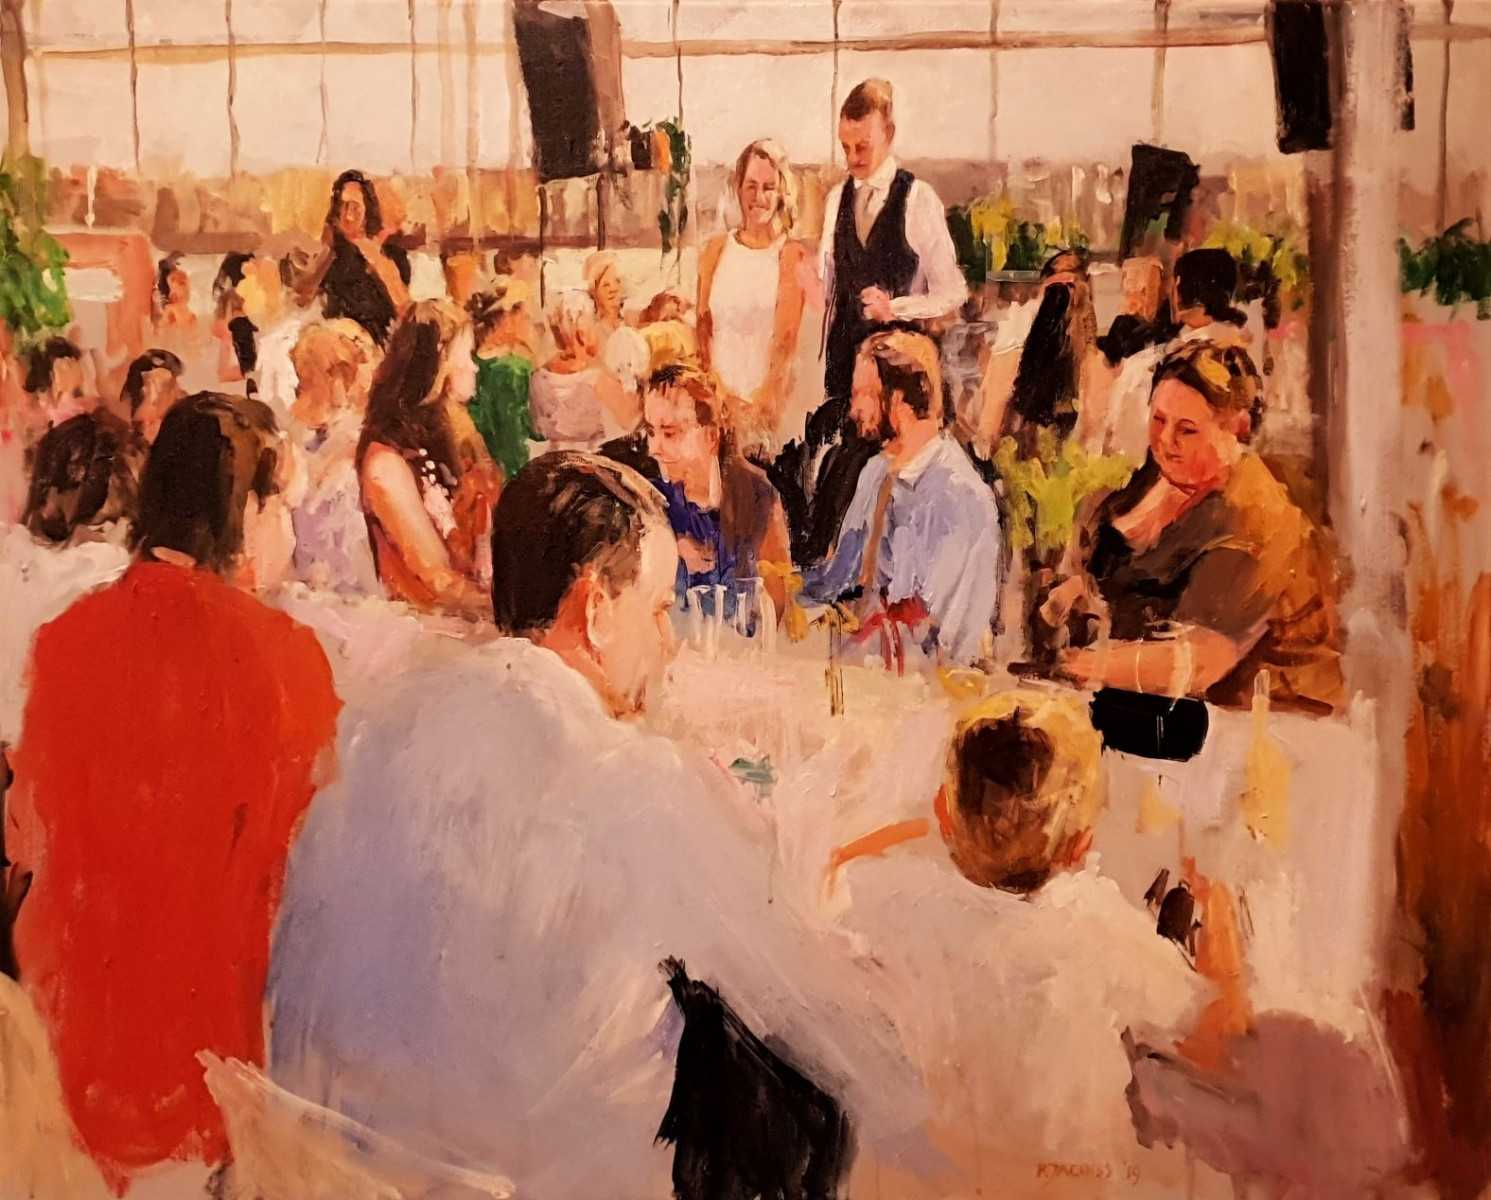 Rob Jacobs schildert doek van 80x100cm tijdens het diner in Amsterdam, Noord-Holland.